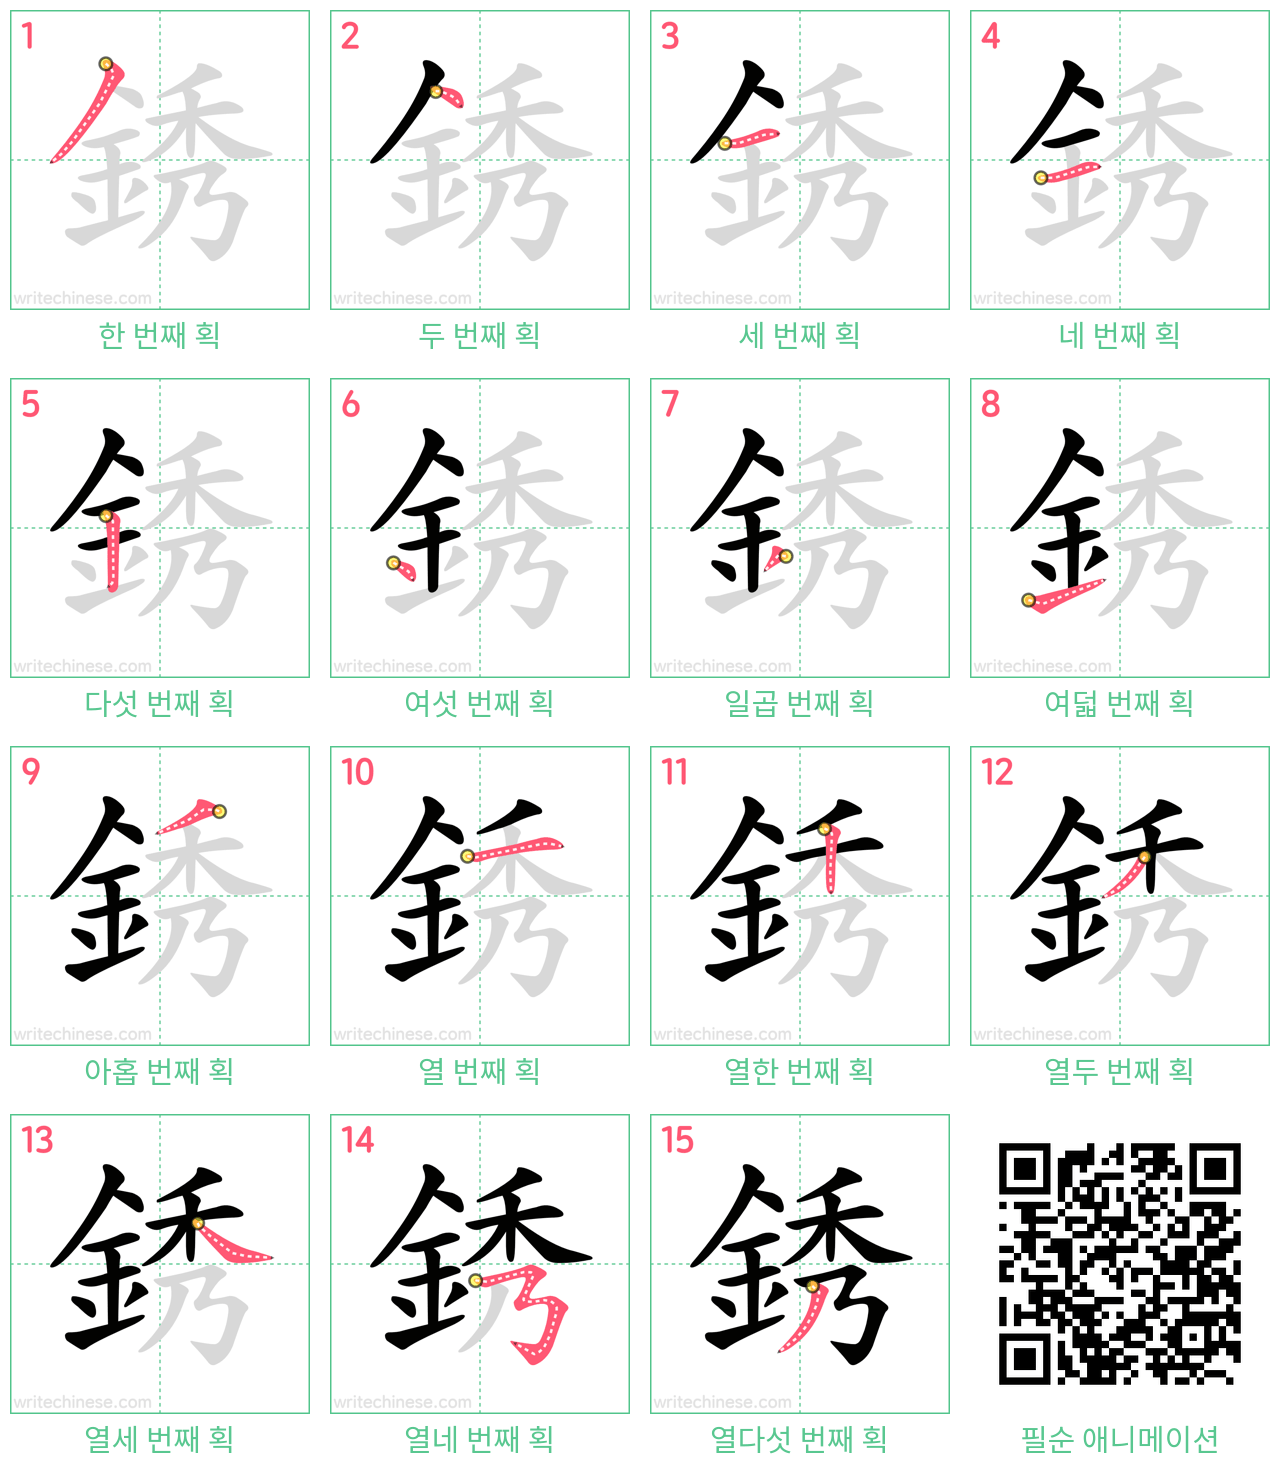 銹 step-by-step stroke order diagrams